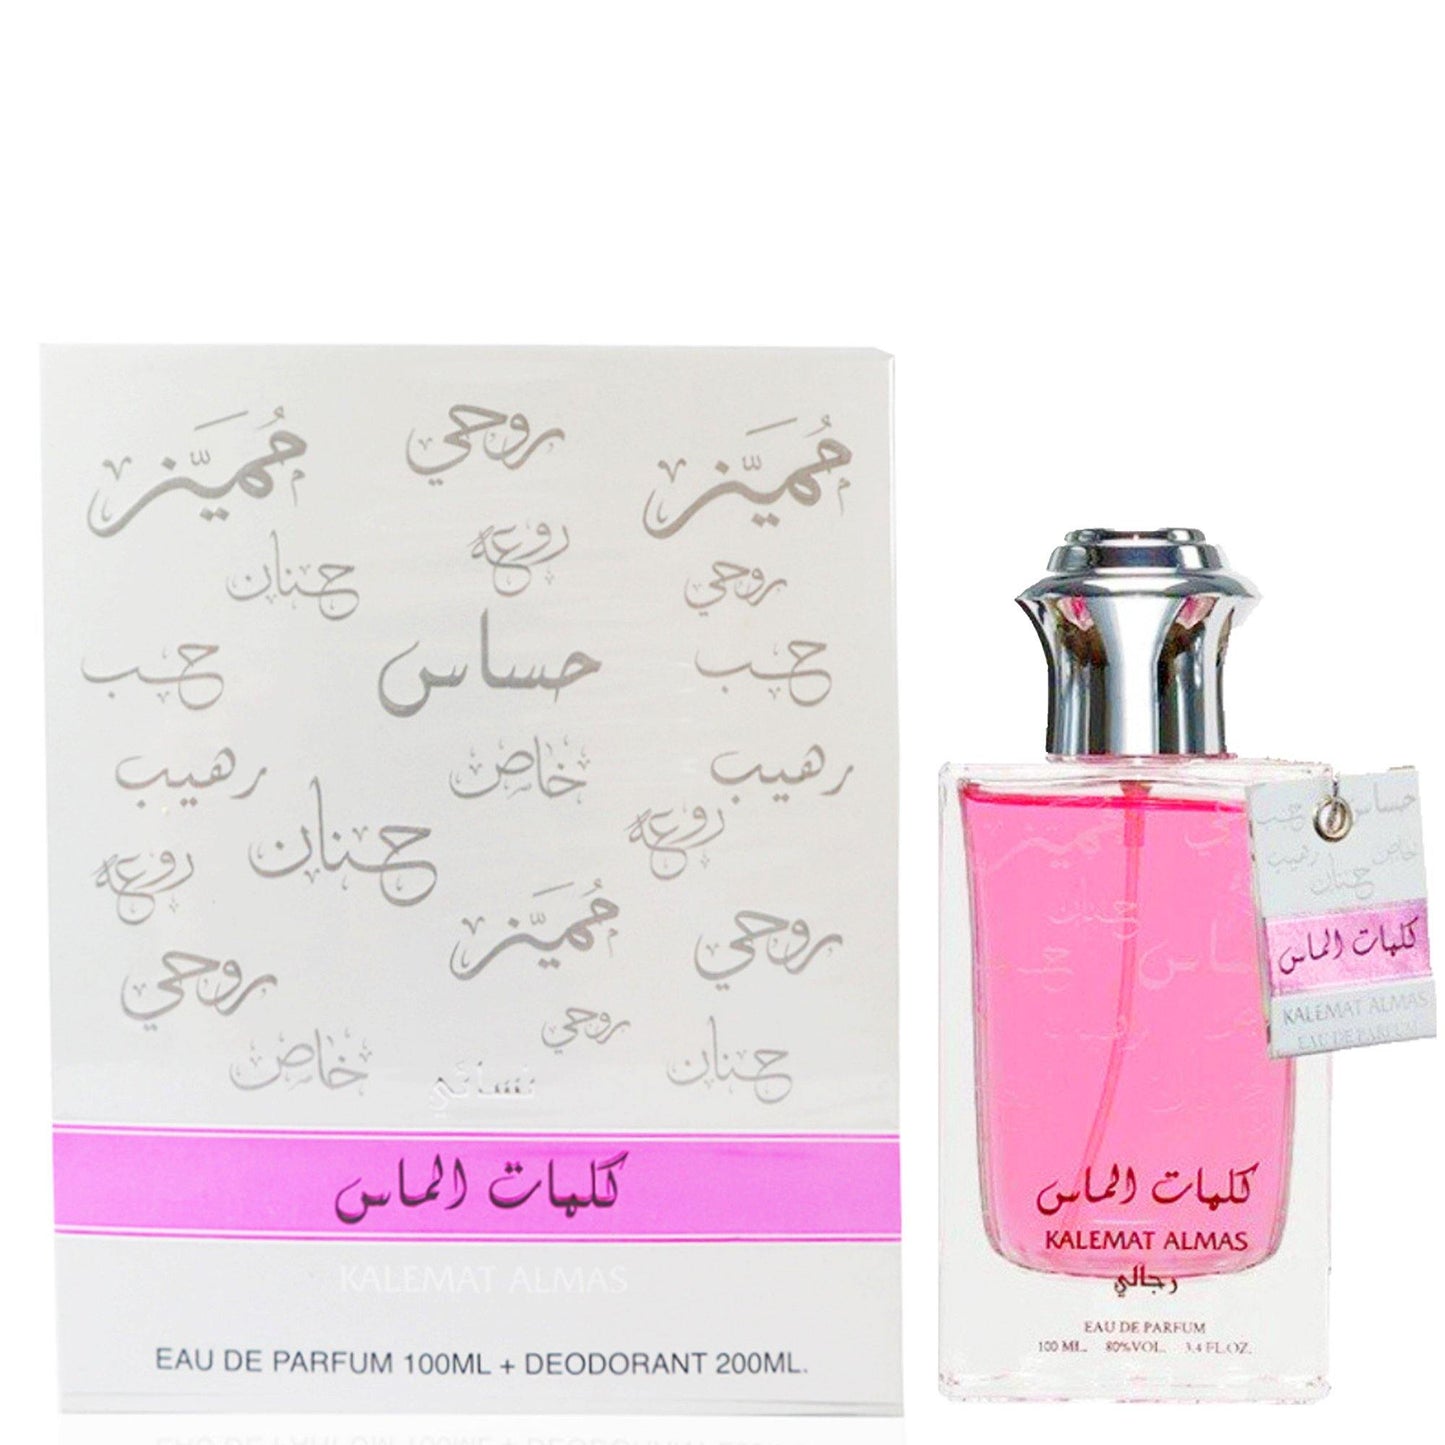 100 ml Parfume Kalemat Almas + Cadou 200 ml Deodorant cu Arome Fructate-Floral pentru Femei - Galeria de Bijuterii